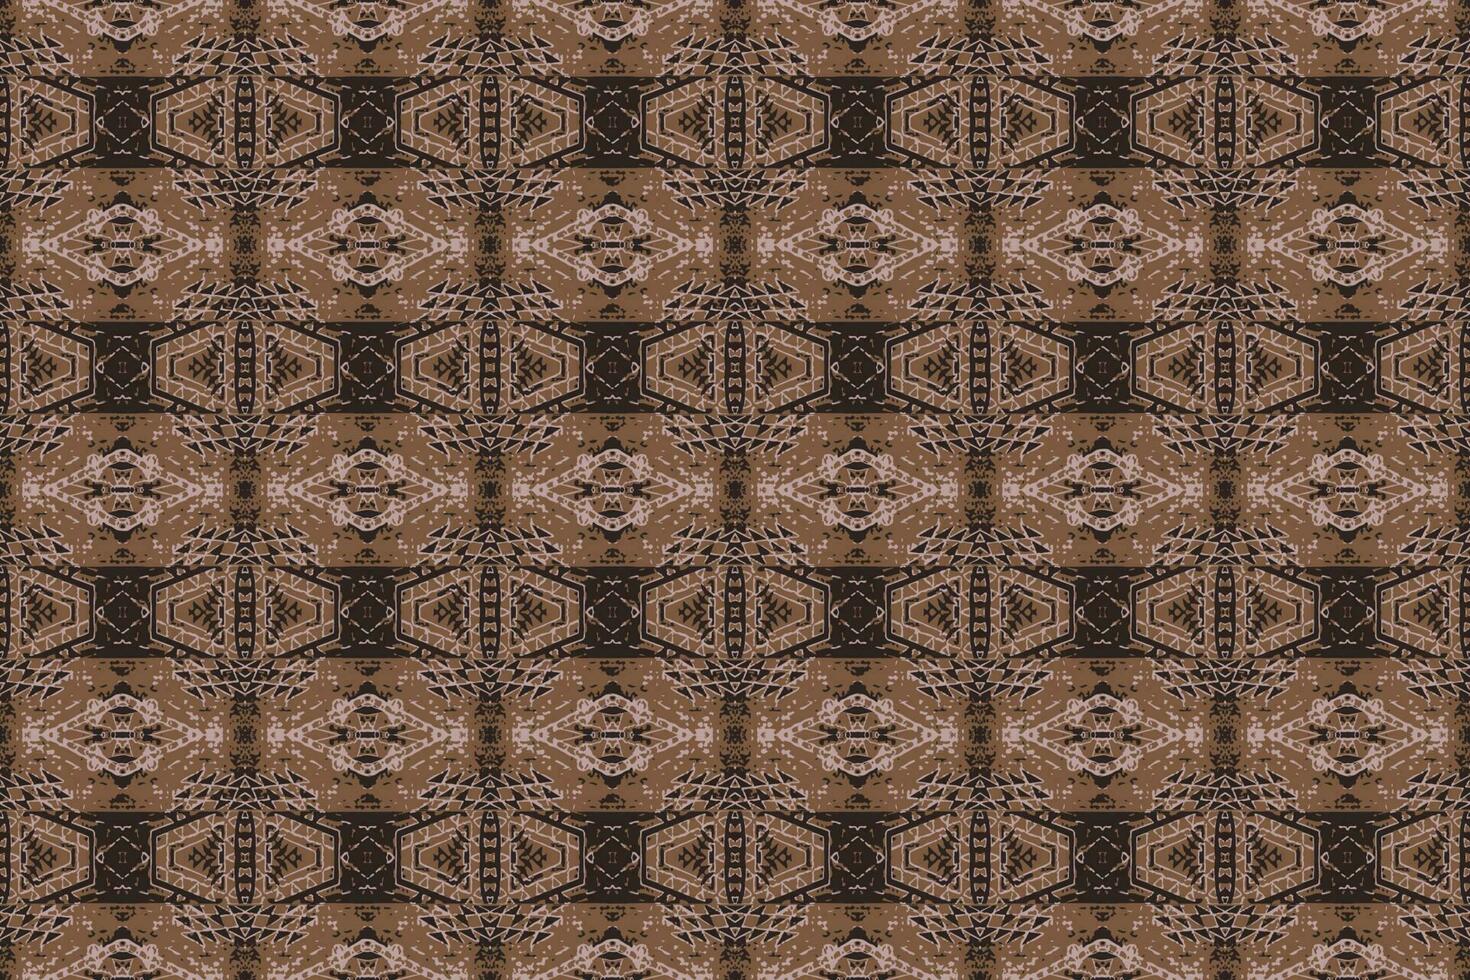 desatado batik padrão, geométrico tribal padrão, é se assemelha étnico boho, asteca estilo, ikat estilo.luxo decorativo tecido padronizar para famoso banners.designed para usar tecido, cortina, tapete, batik vetor